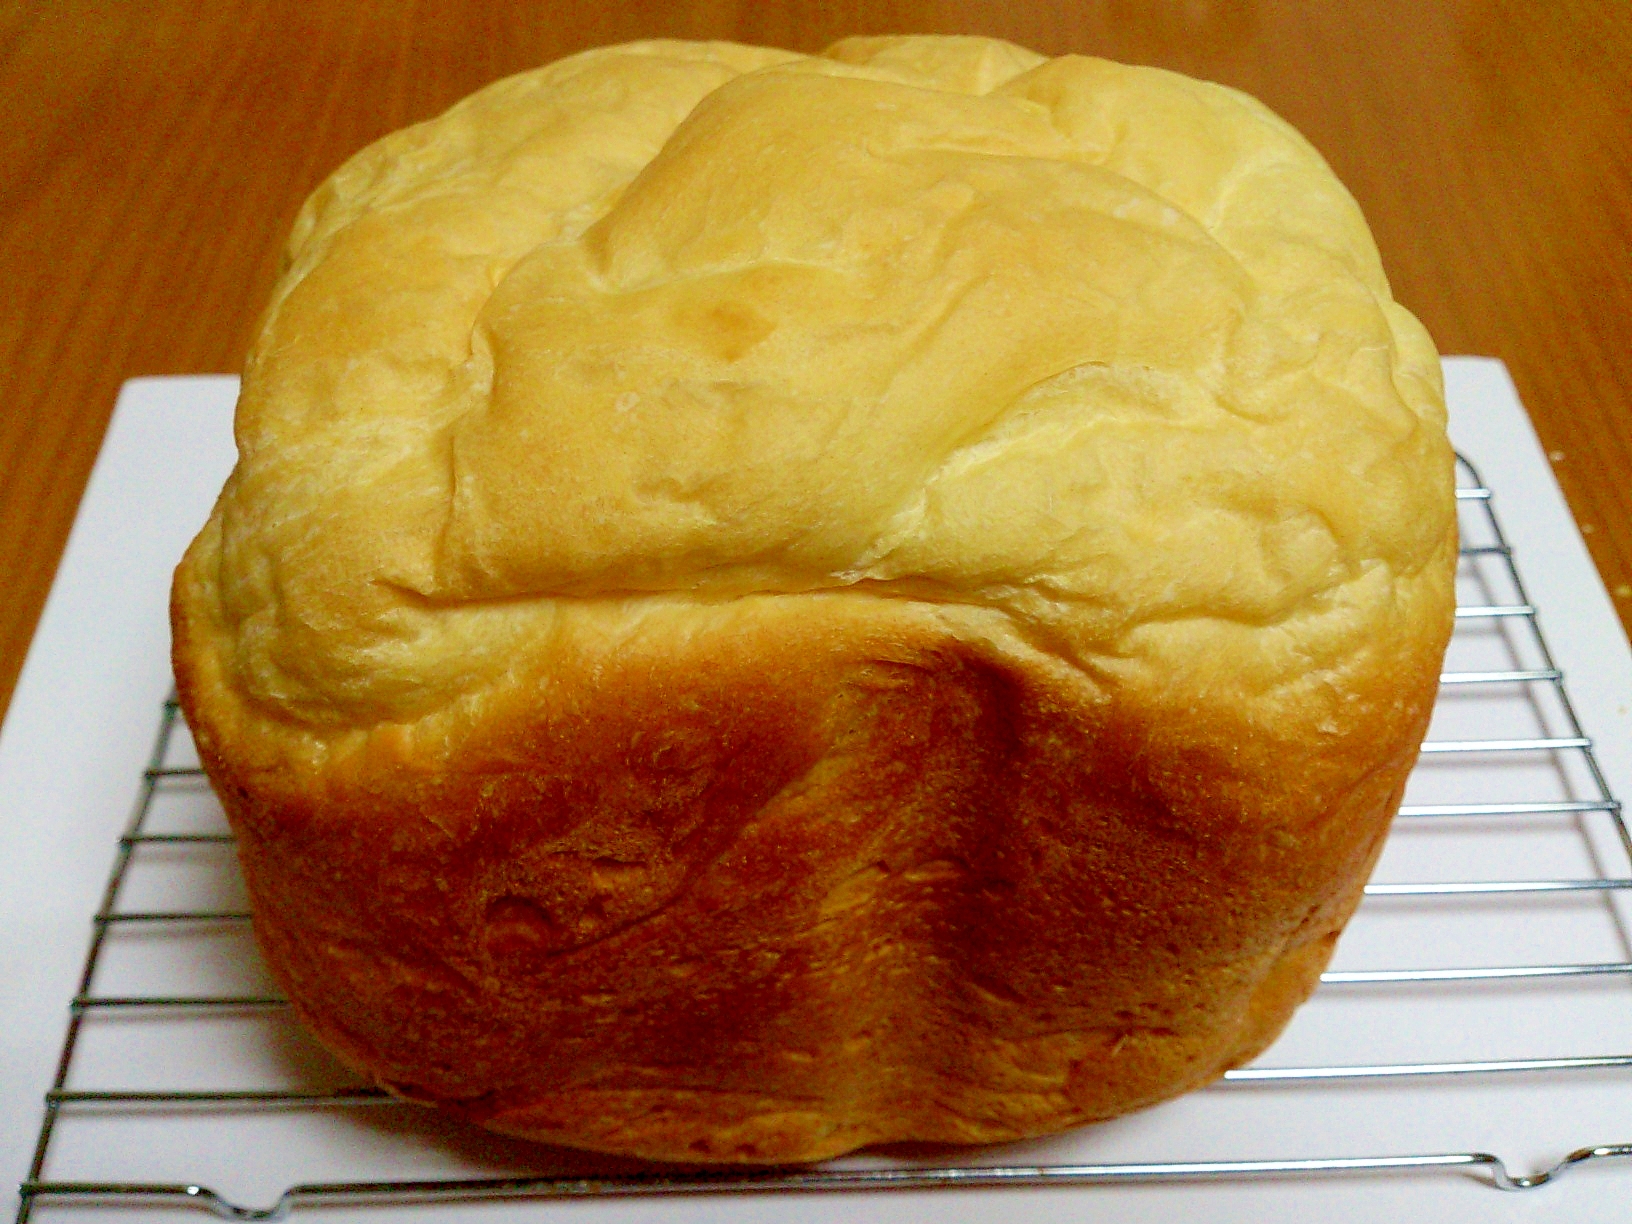 ホームベーカリー☆基本の食パン